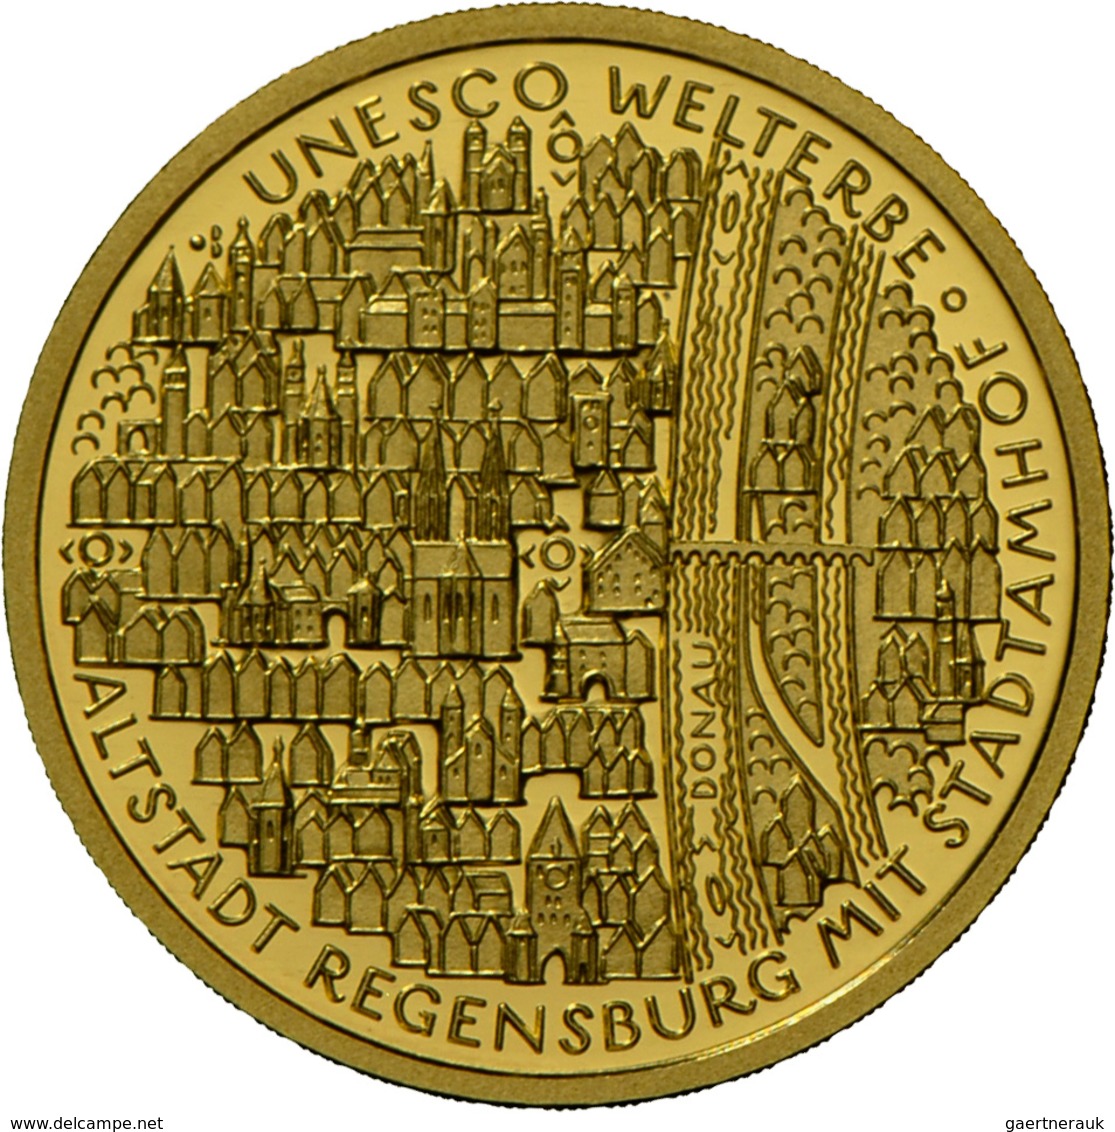 Deutschland - Anlagegold: 5 X 100 Euro 2016 Altstadt Regensburg Mit Stadtamhof (A,D,F,G,J) In Origin - Alemania